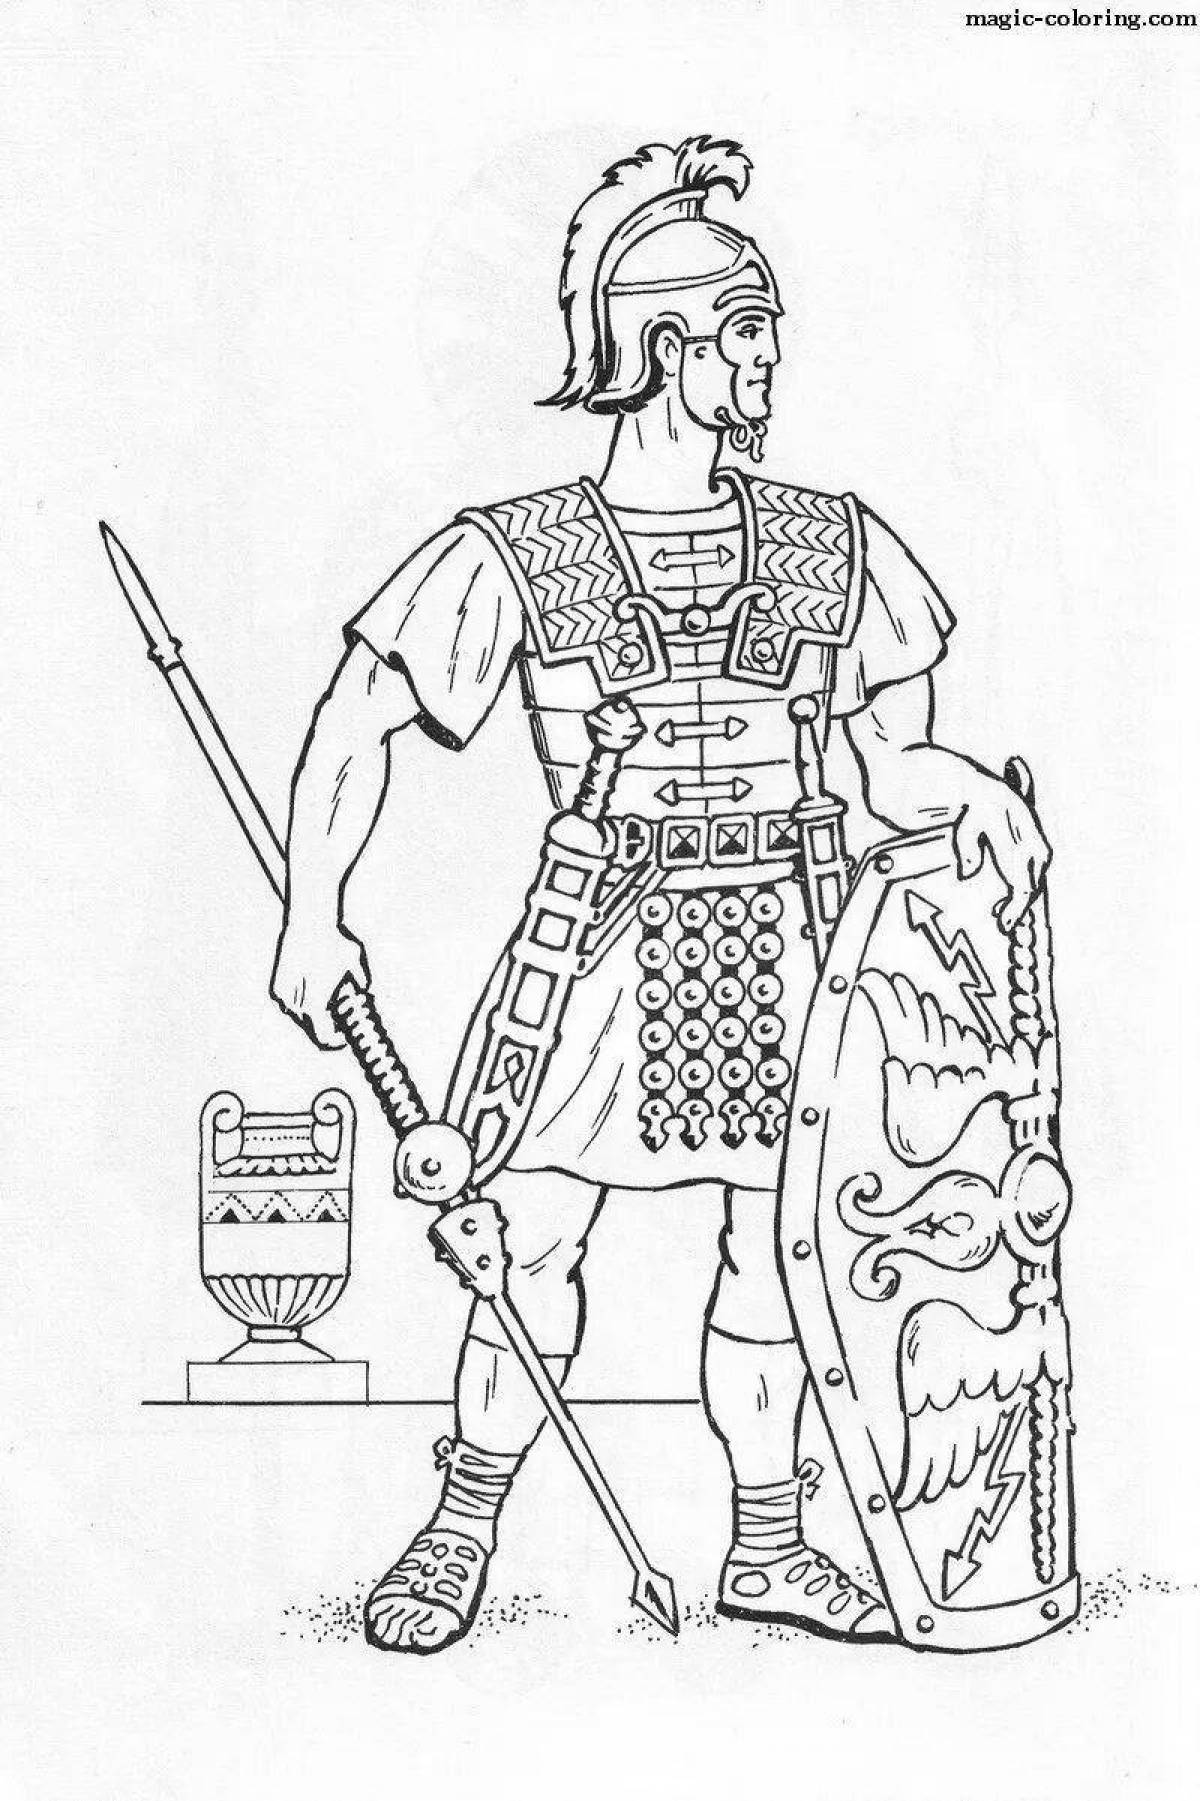 Раскраска Римский воин легионер